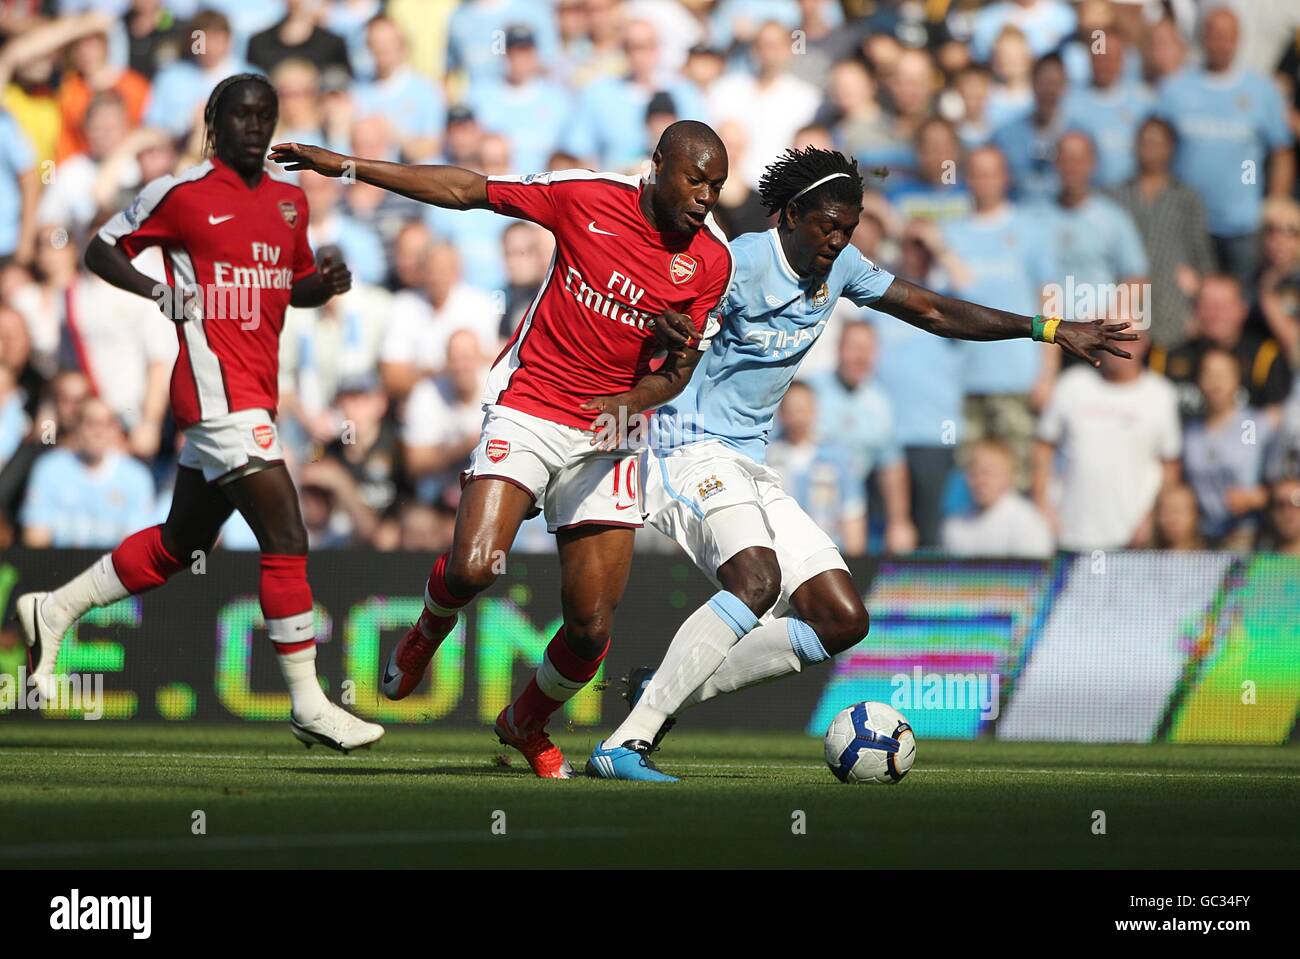 Fußball - Barclays Premier League - Manchester City / Arsenal - City of Manchester Stadium. Emmanuel Adebayor (rechts) von Manchester City und William Gallas von Arsenal kämpfen um den Ball Stockfoto